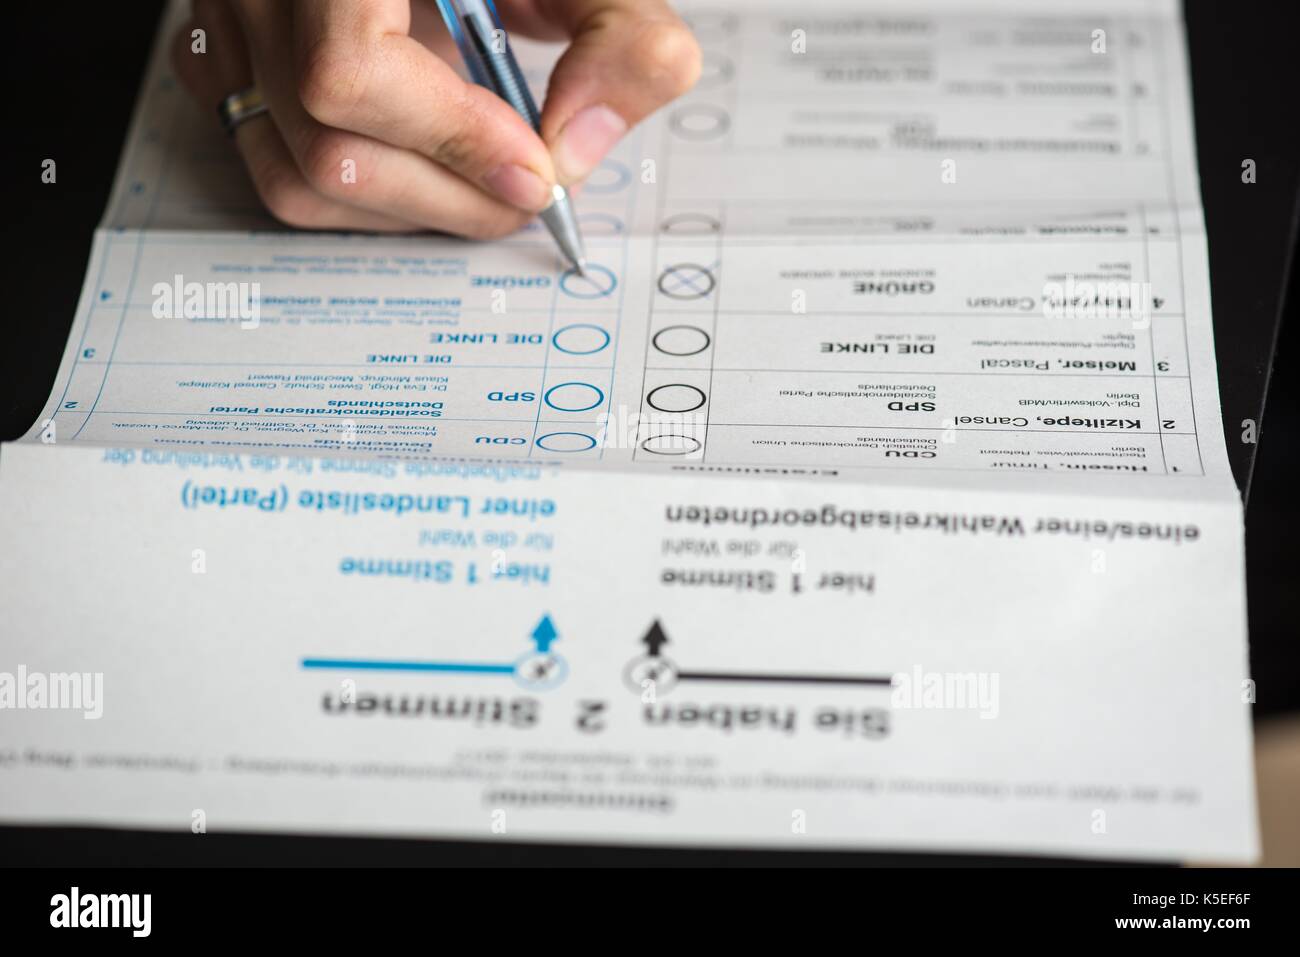 Scheda di voto o documenti elettorali degli assenti per le elezioni federali tedesche del 2017 in Germania, Europa Foto Stock